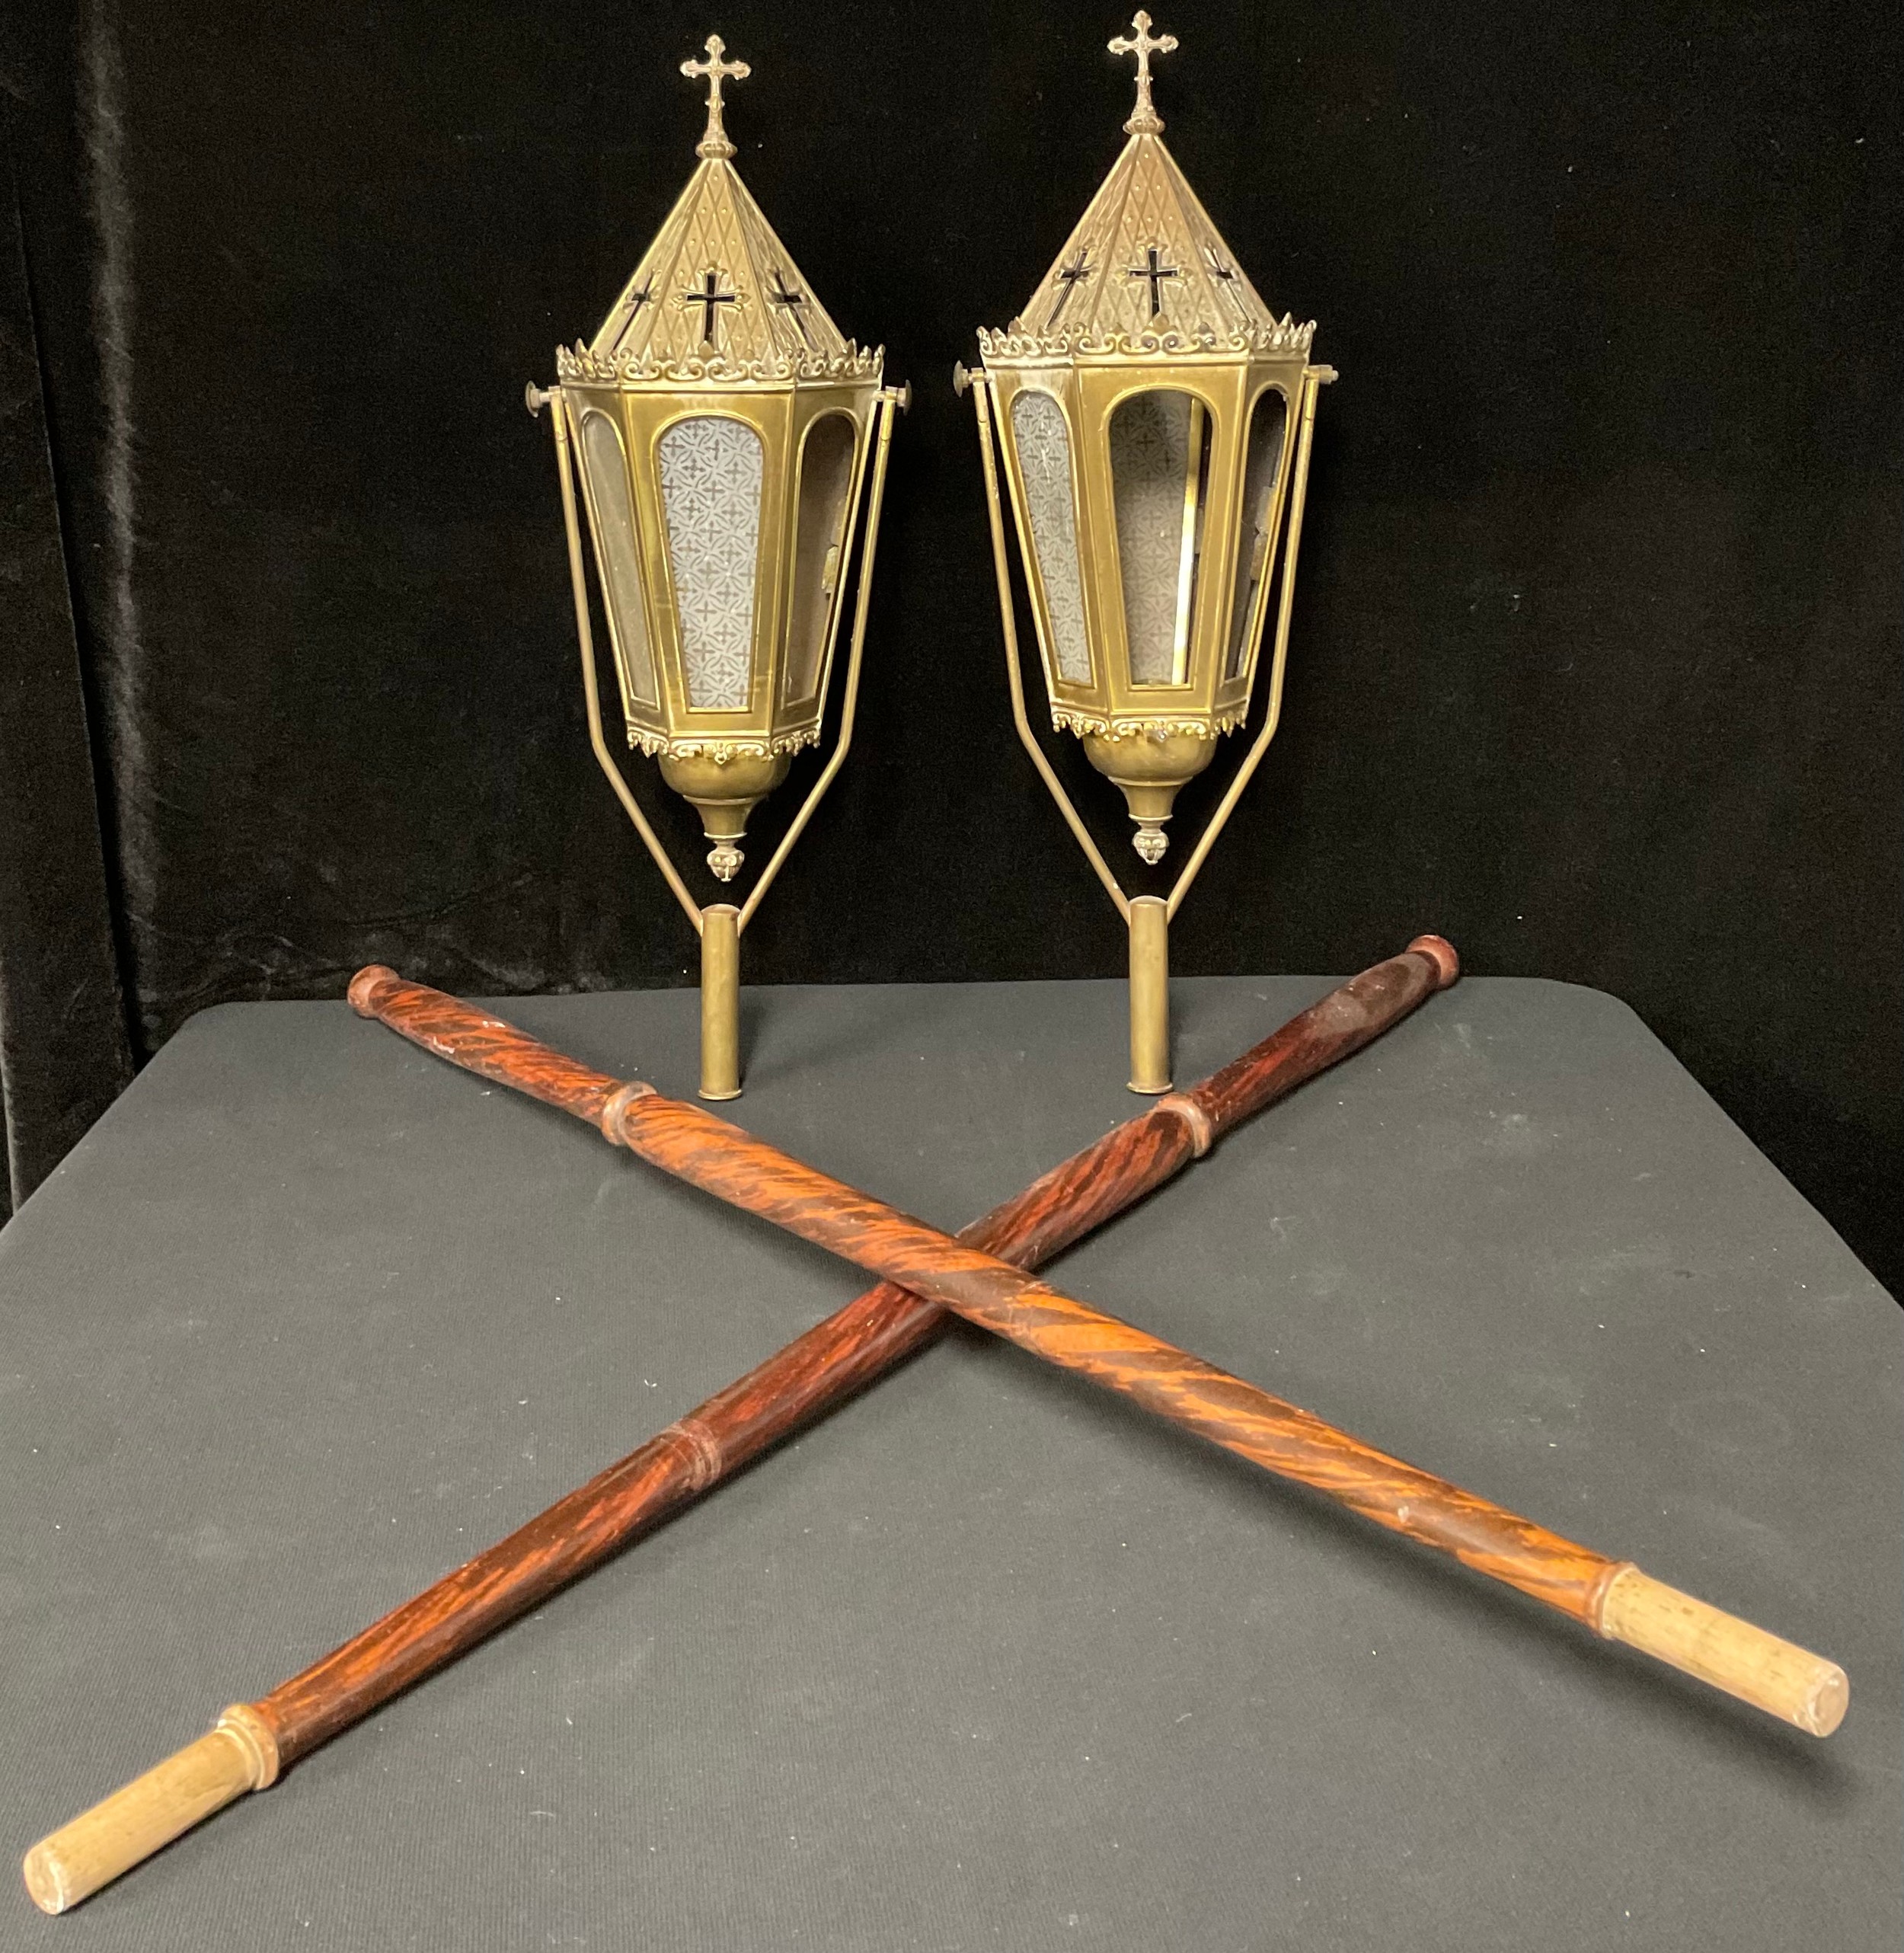 Two ecclesiastical lanterns on poles